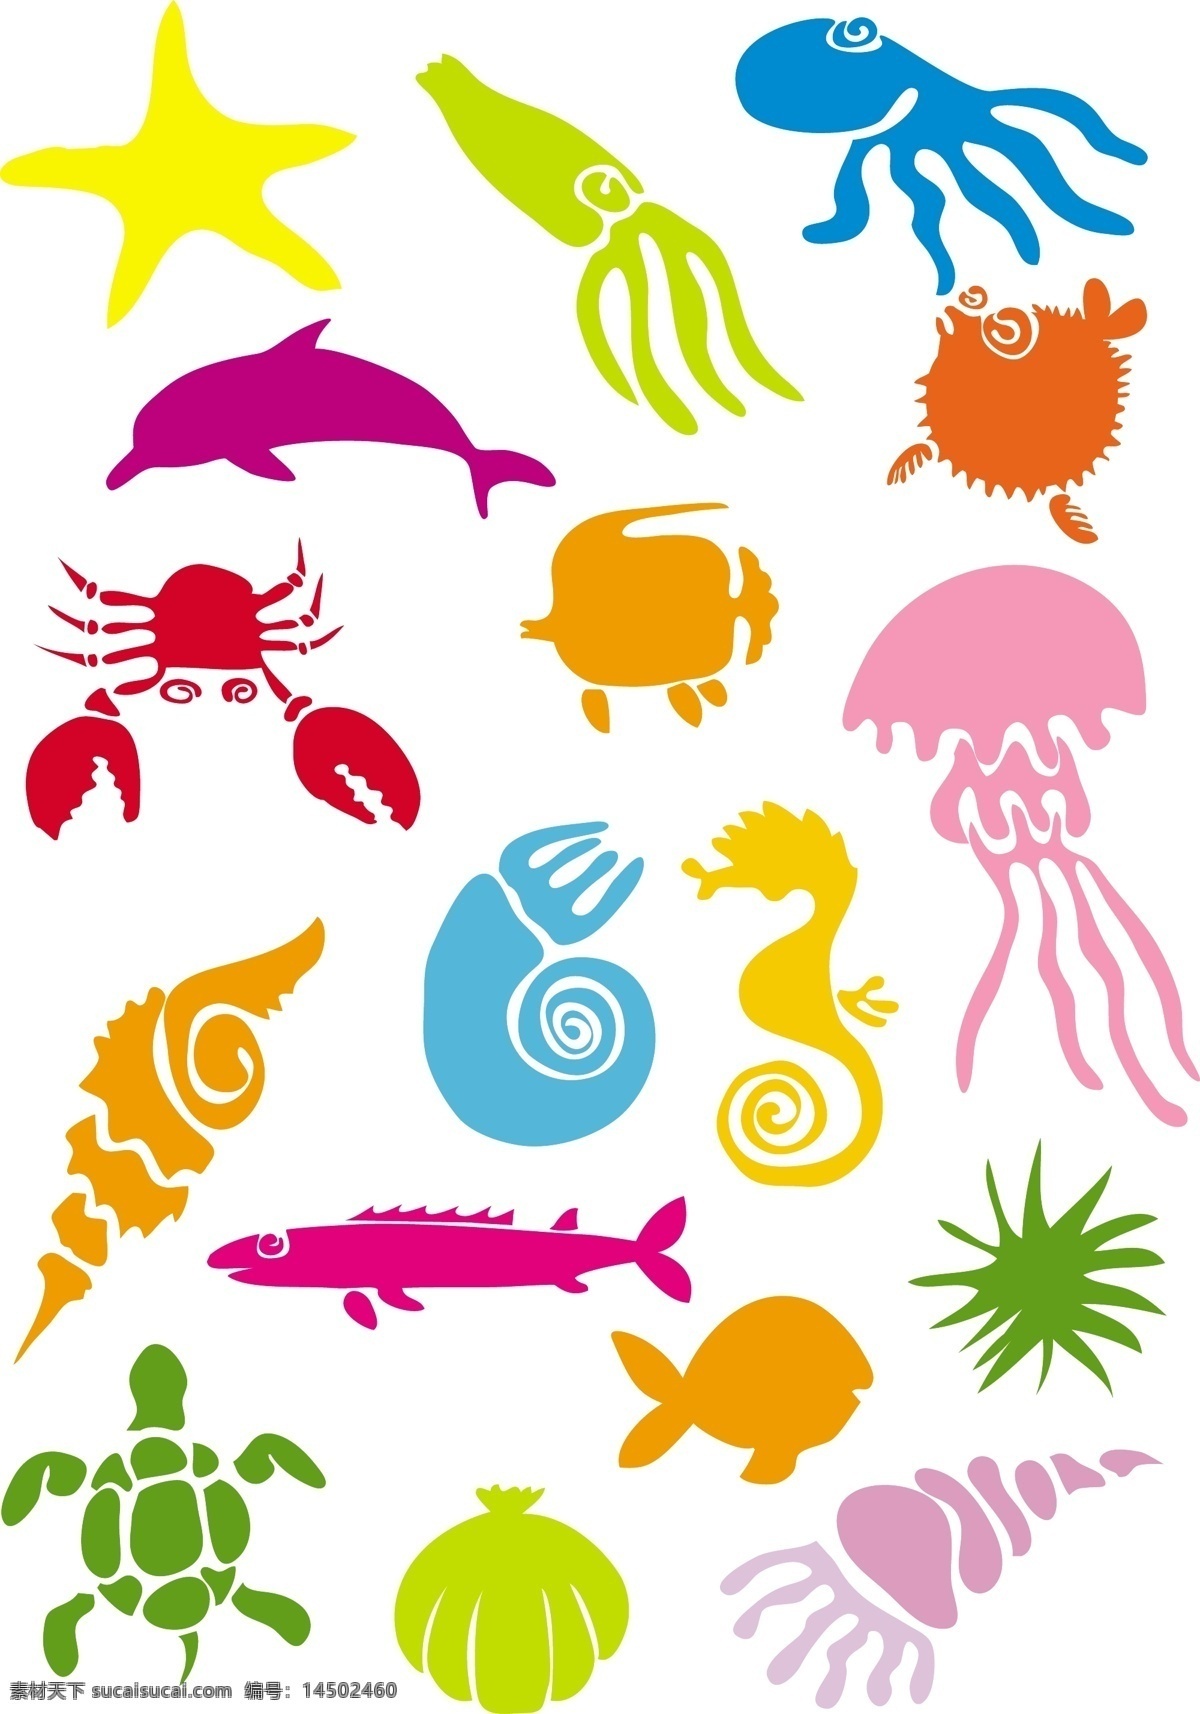 卡通 海洋生物 矢量 贝壳 海马 海星 海洋 海藻 螃蟹 生物 水母 乌贼 鱼 章鱼 鳝鱼 矢量图 其他矢量图